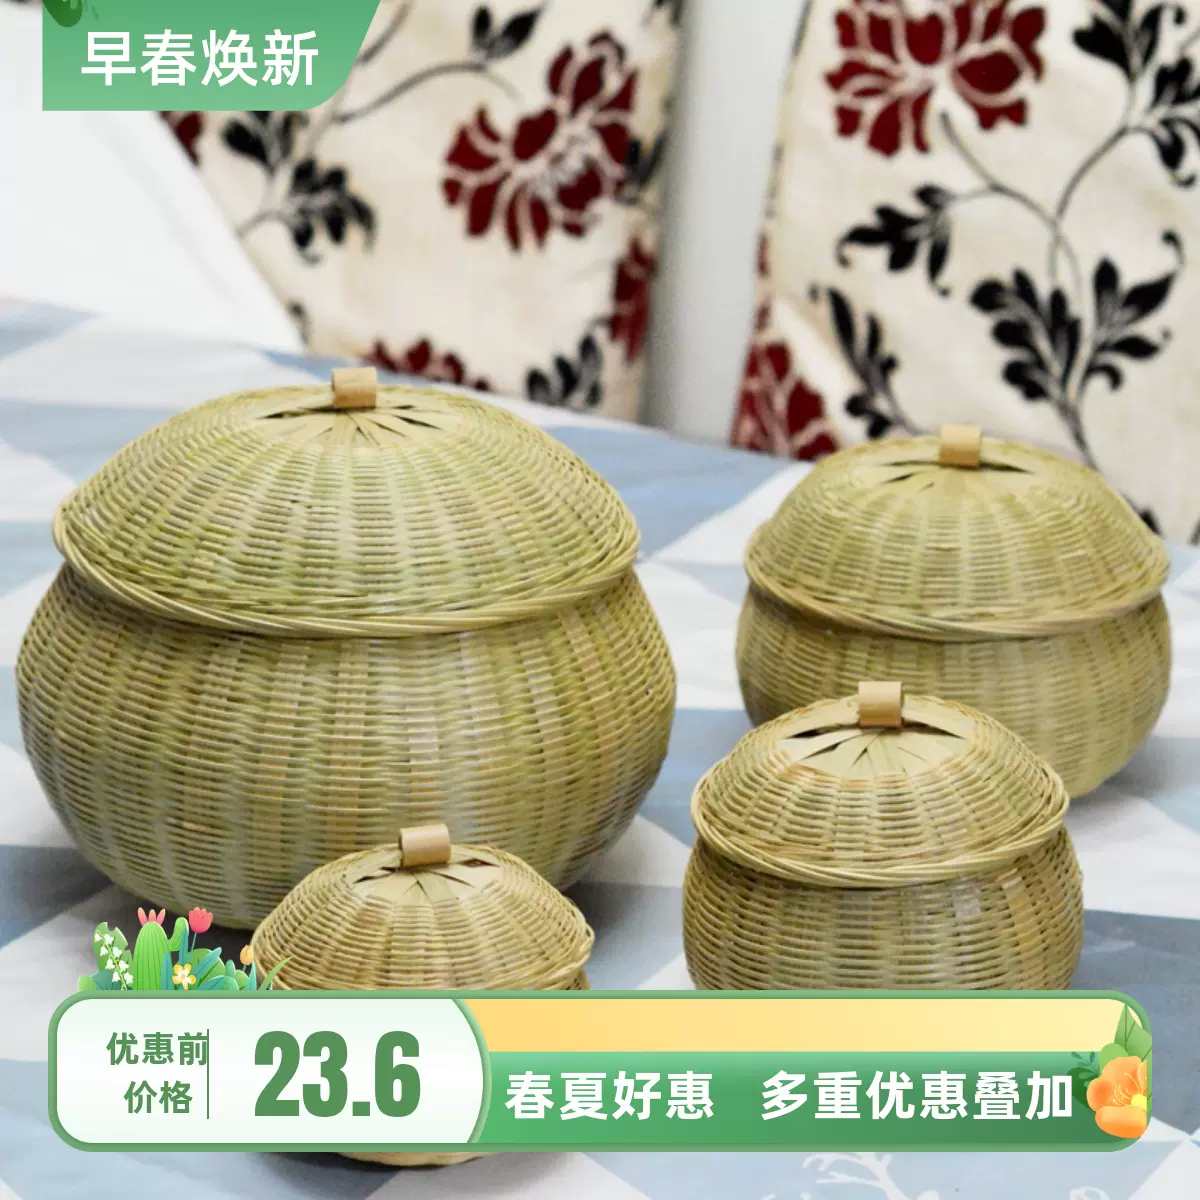 茶叶罐竹编收纳盒有盖家用竹制品带盖子竹篮围棋篮手编筐茶饼盒-Taobao 